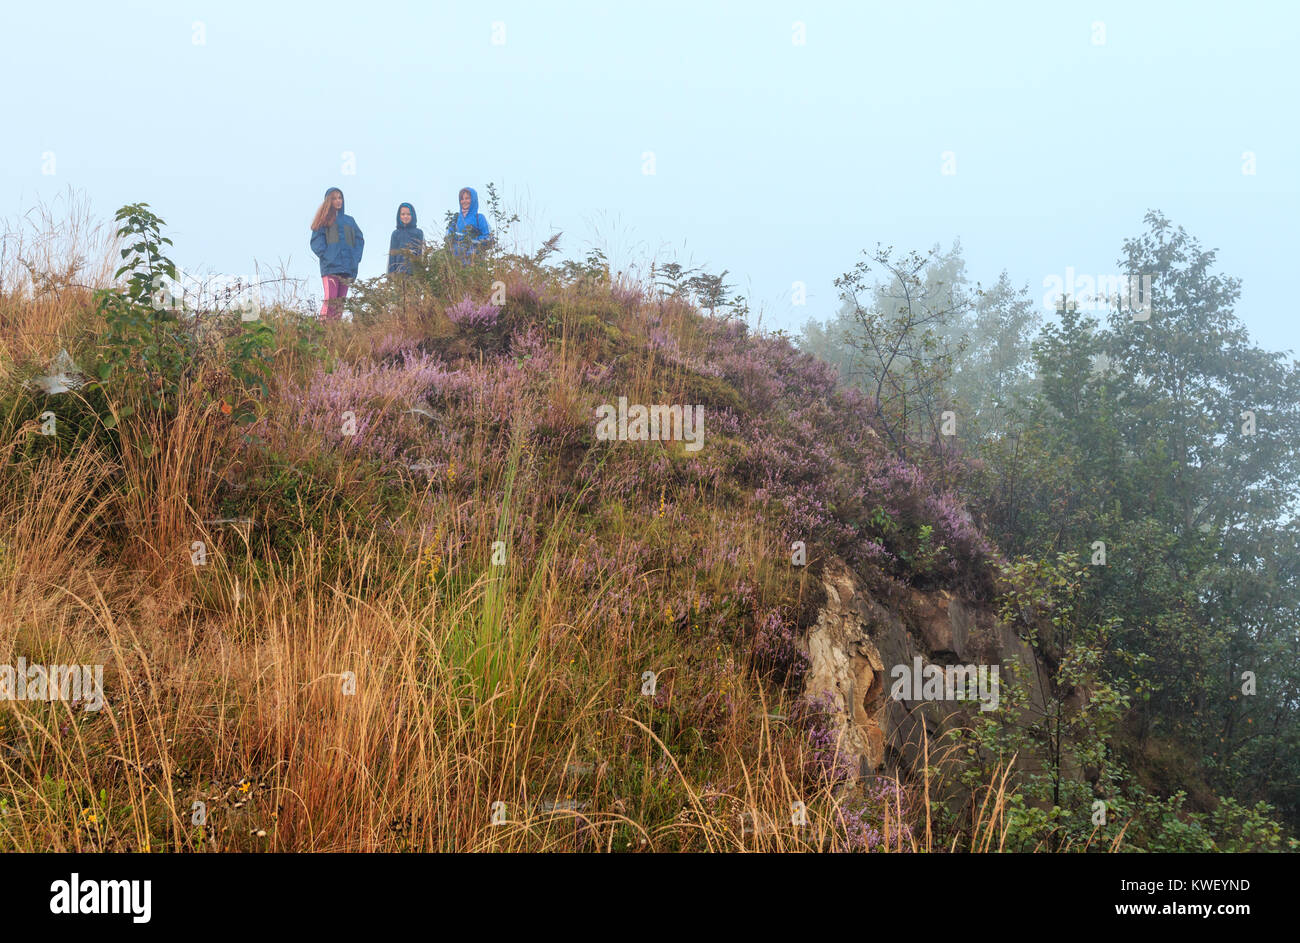 Famiglia su misty Rugiada di mattina Wild montagna collina erbosa con wild lilac heather fiori e spider web. Foto Stock